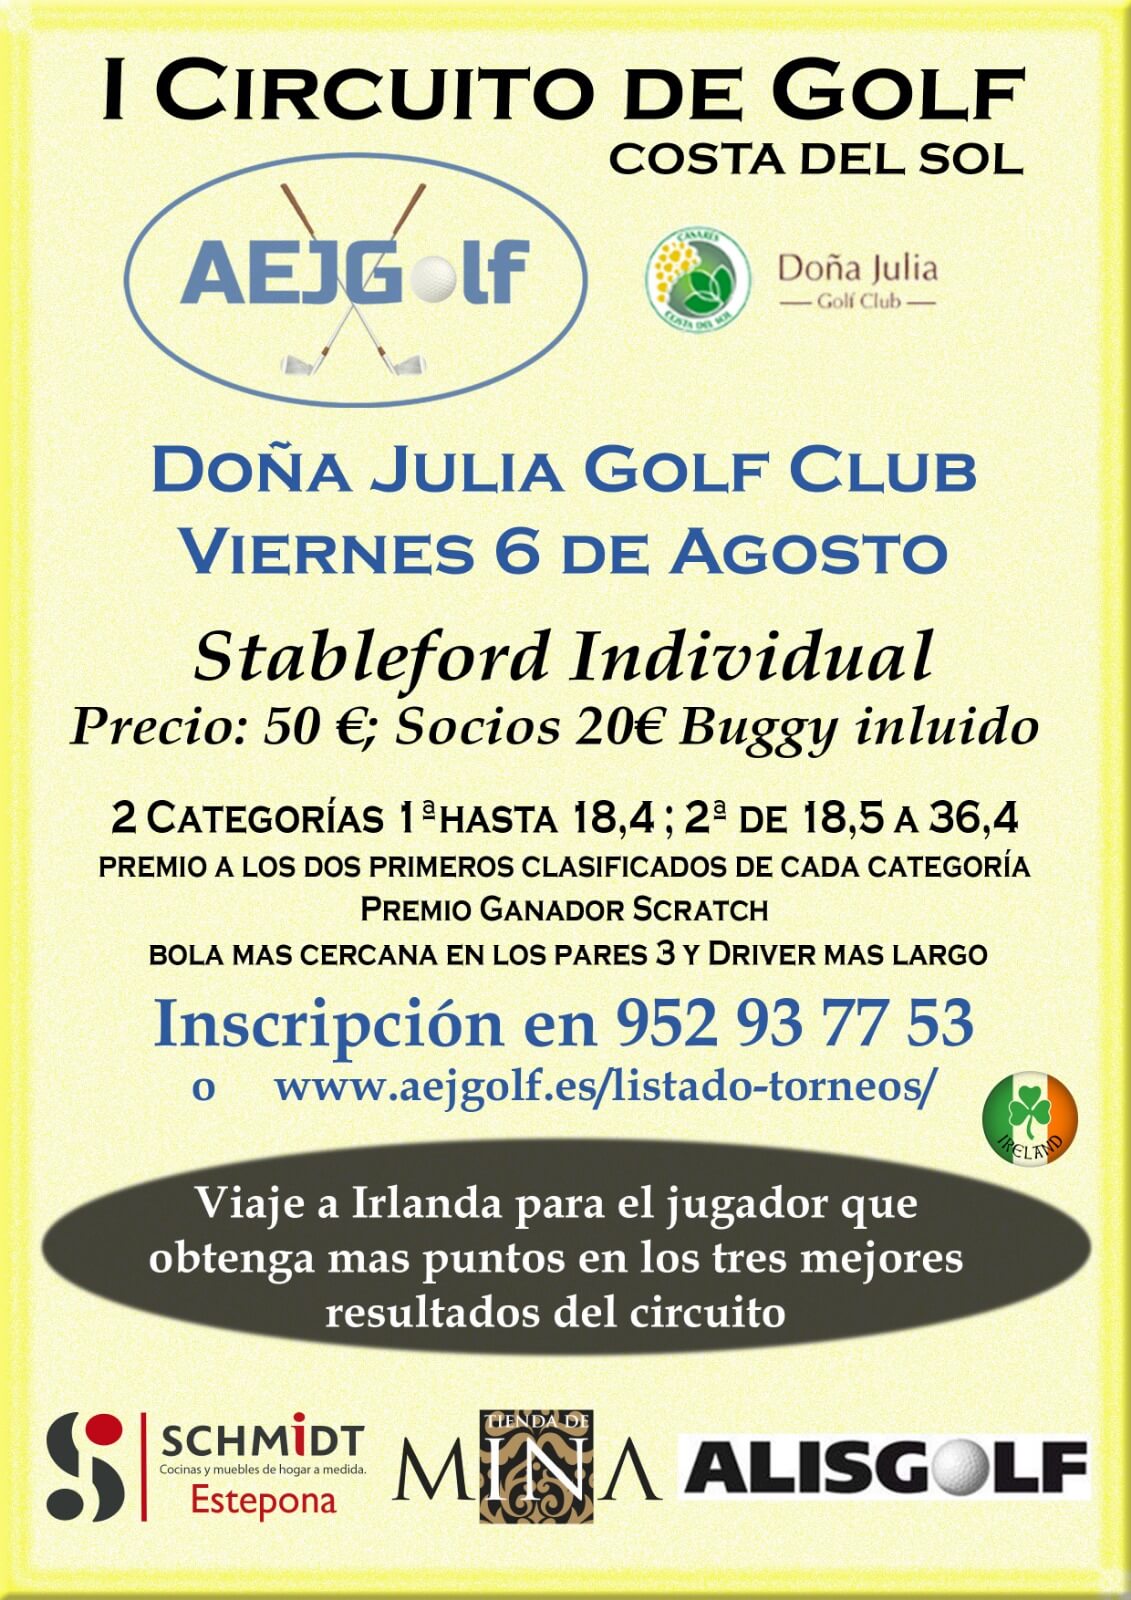 I Circuito de Golf Costa del Sol. Doña Julia Golf Club